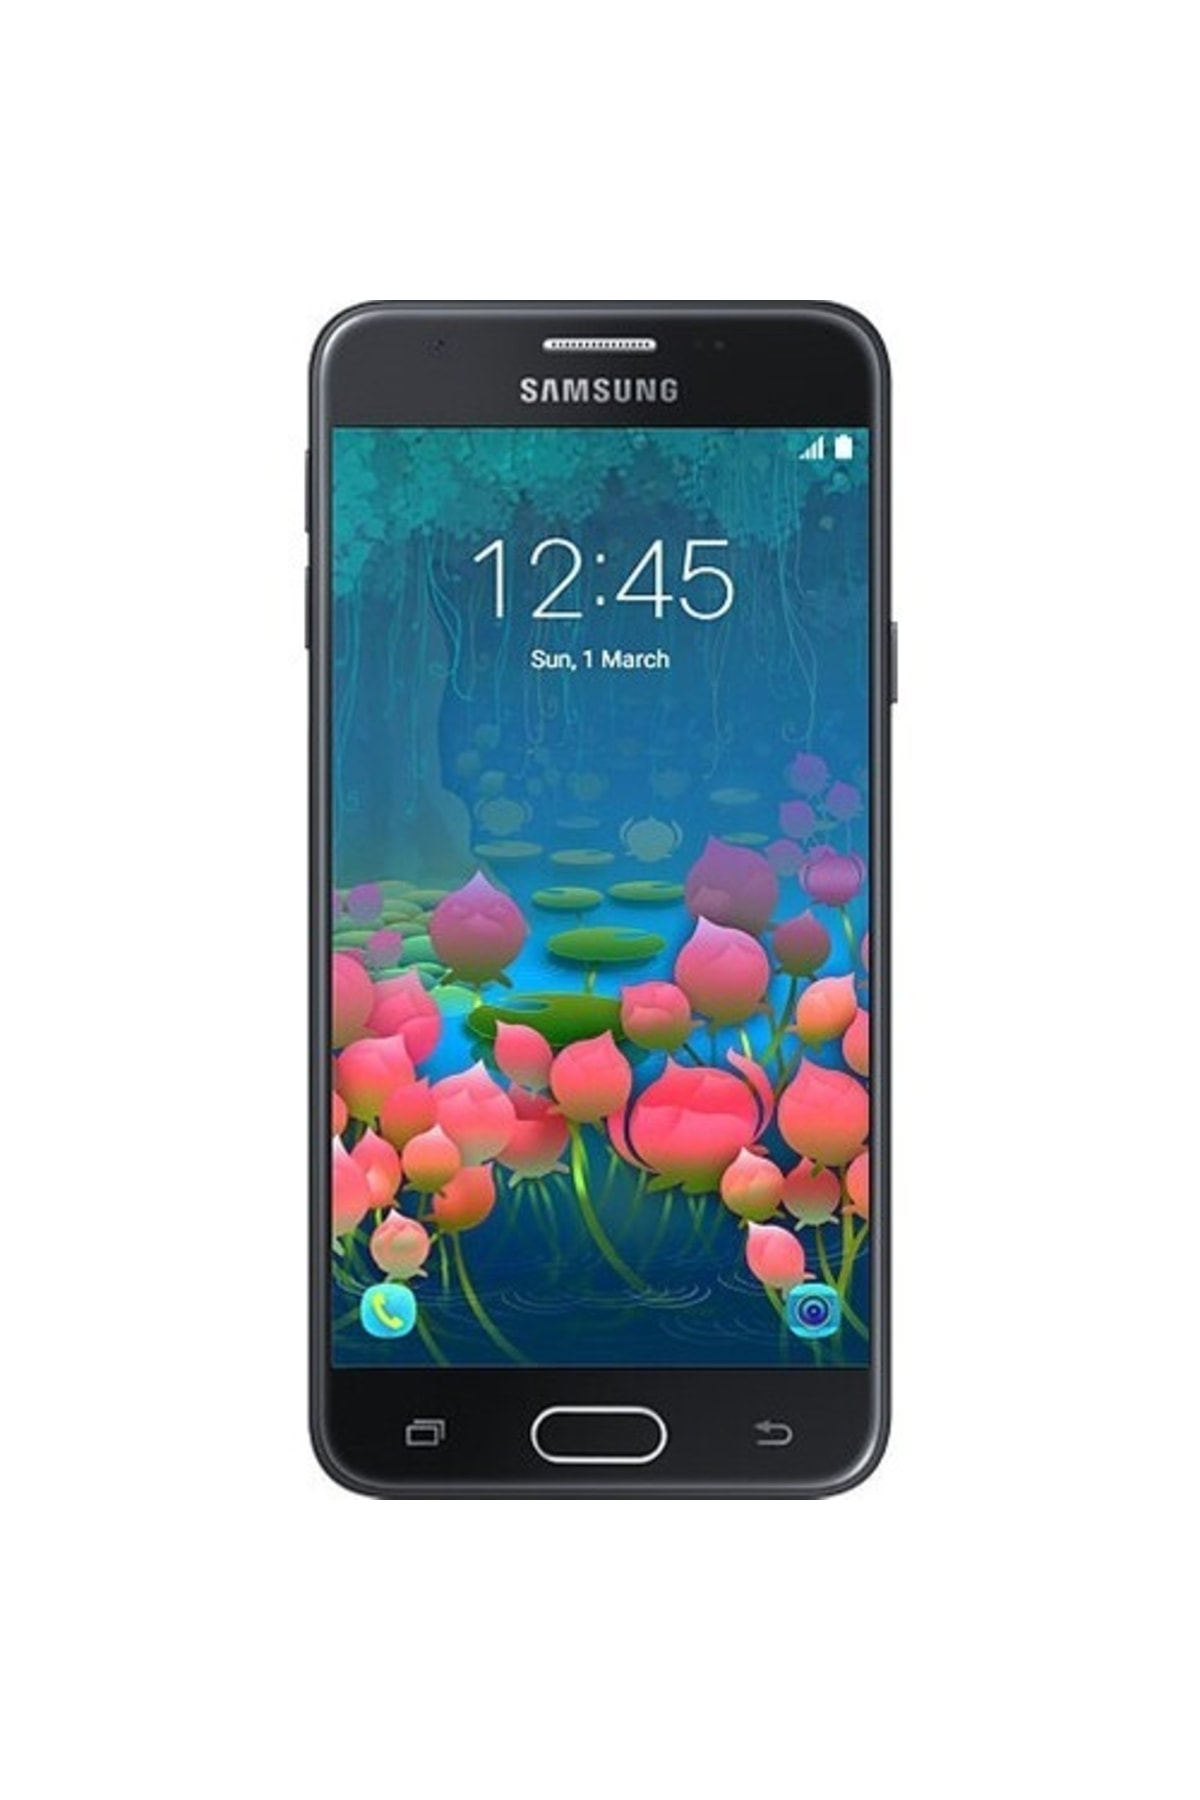 Samsung Yenilenmiş Galaxy J7 Prime Black 16 gb